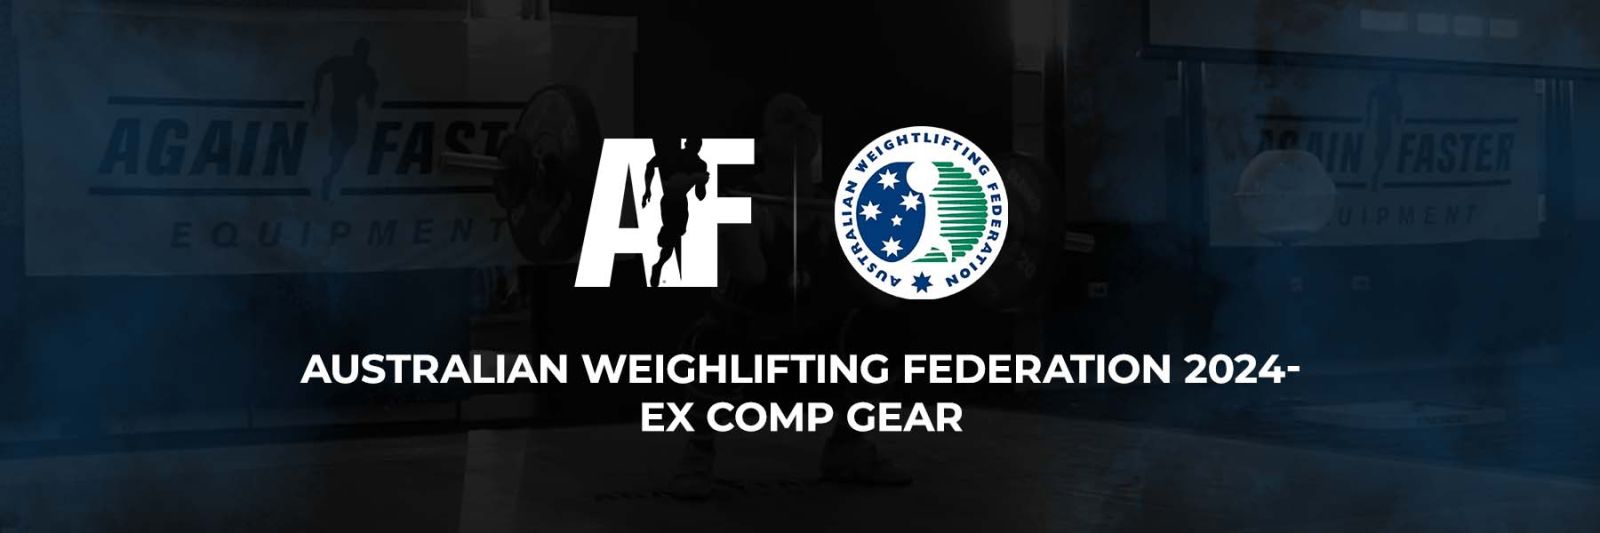 Australian Weightlifting Federation Ex Comp Gear - Again Faster